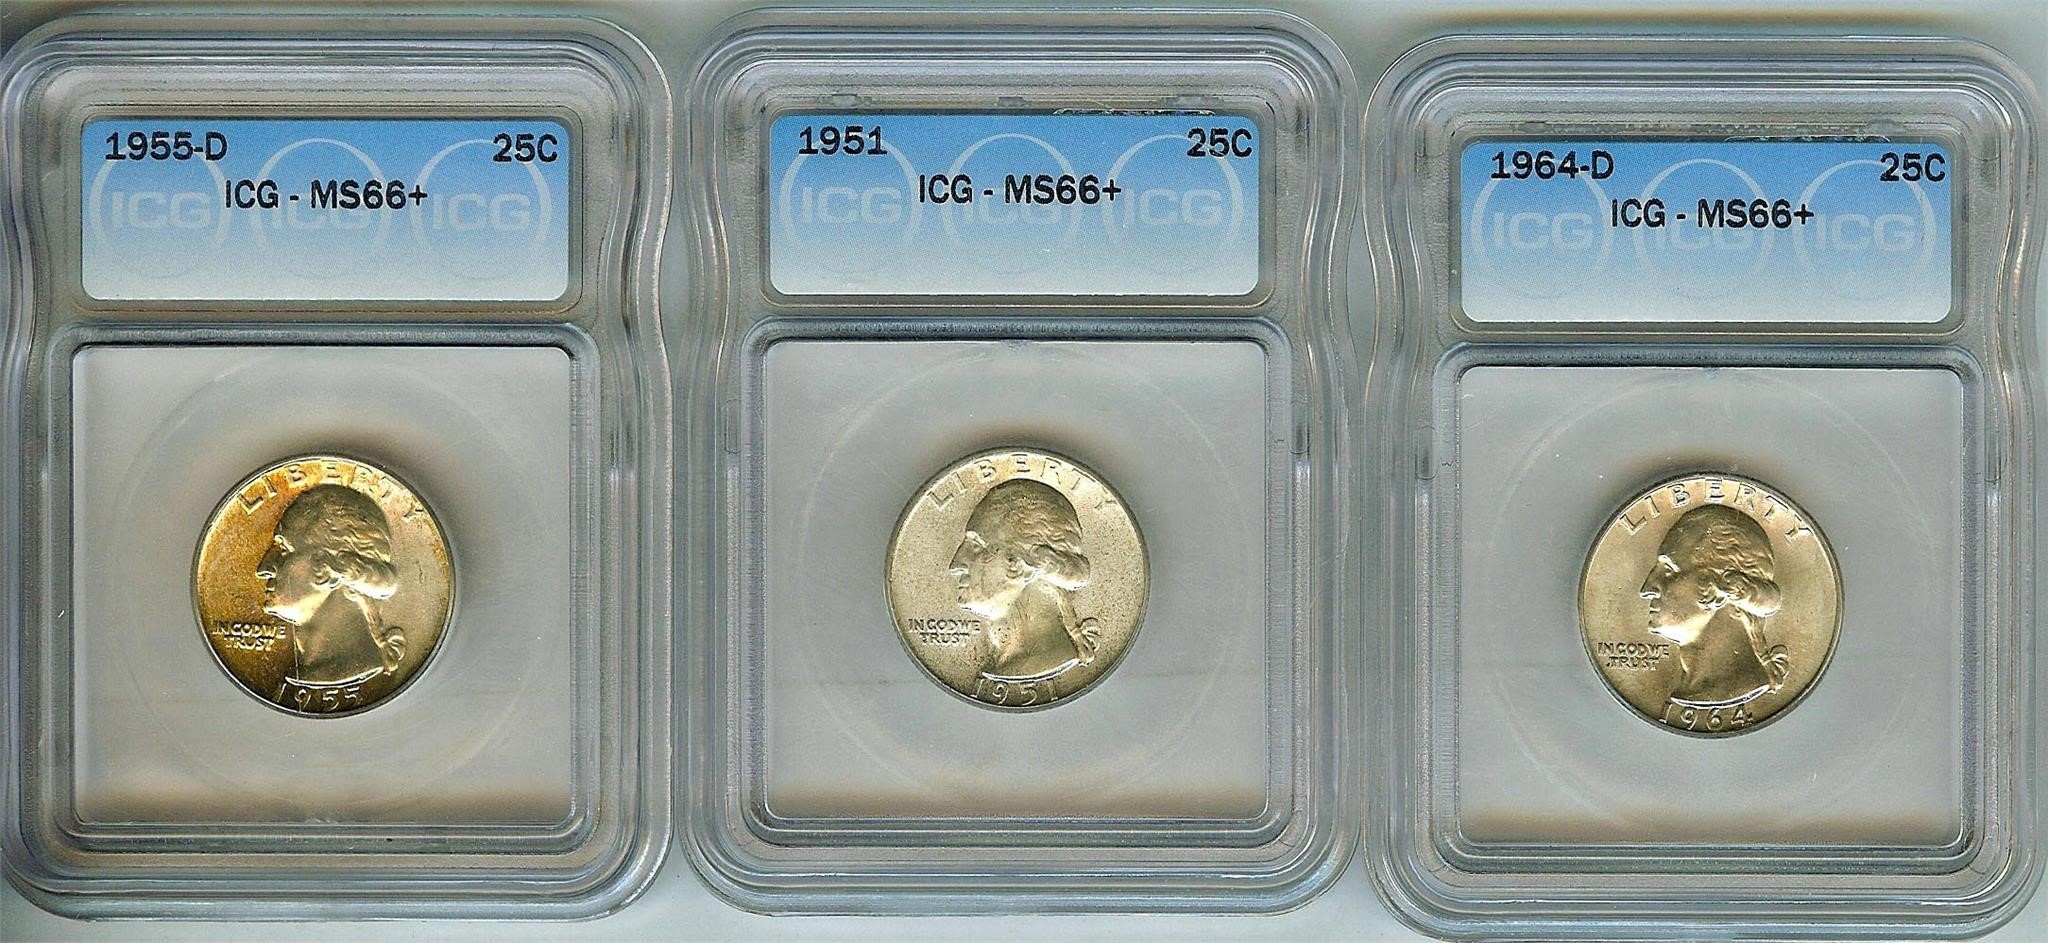 1951 1955-D 1964-D Quarter ICG MS66+ LISTS $1485